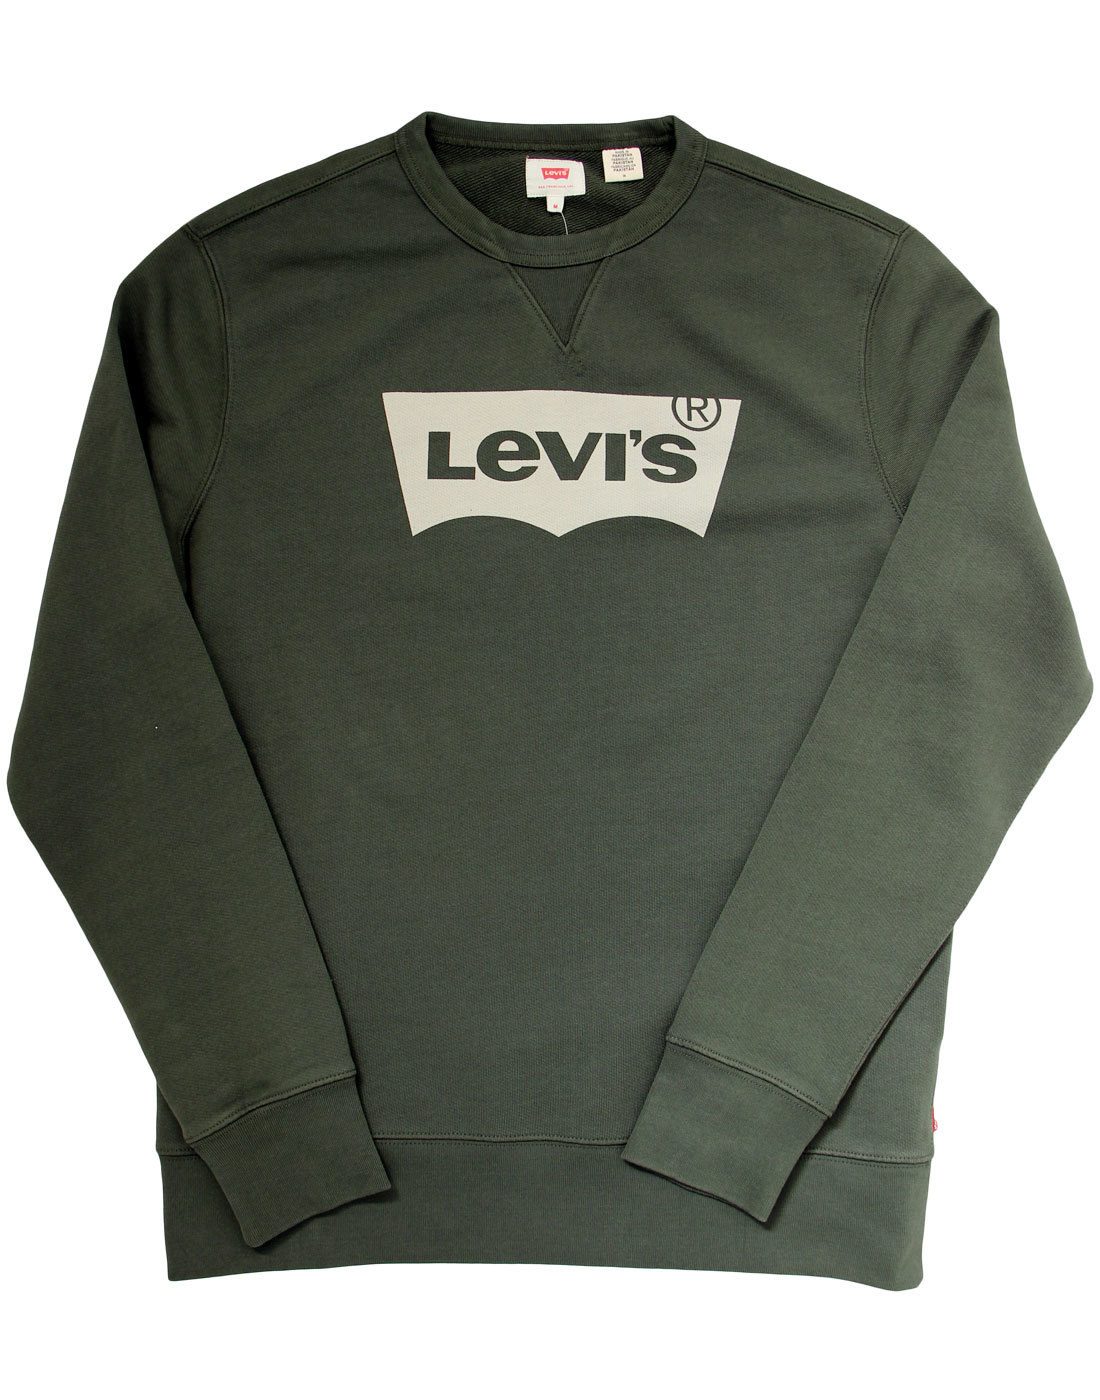 LEVI'S® Mens Retro 70s Indie Graphic Crew Fleece Sweatshirt Green